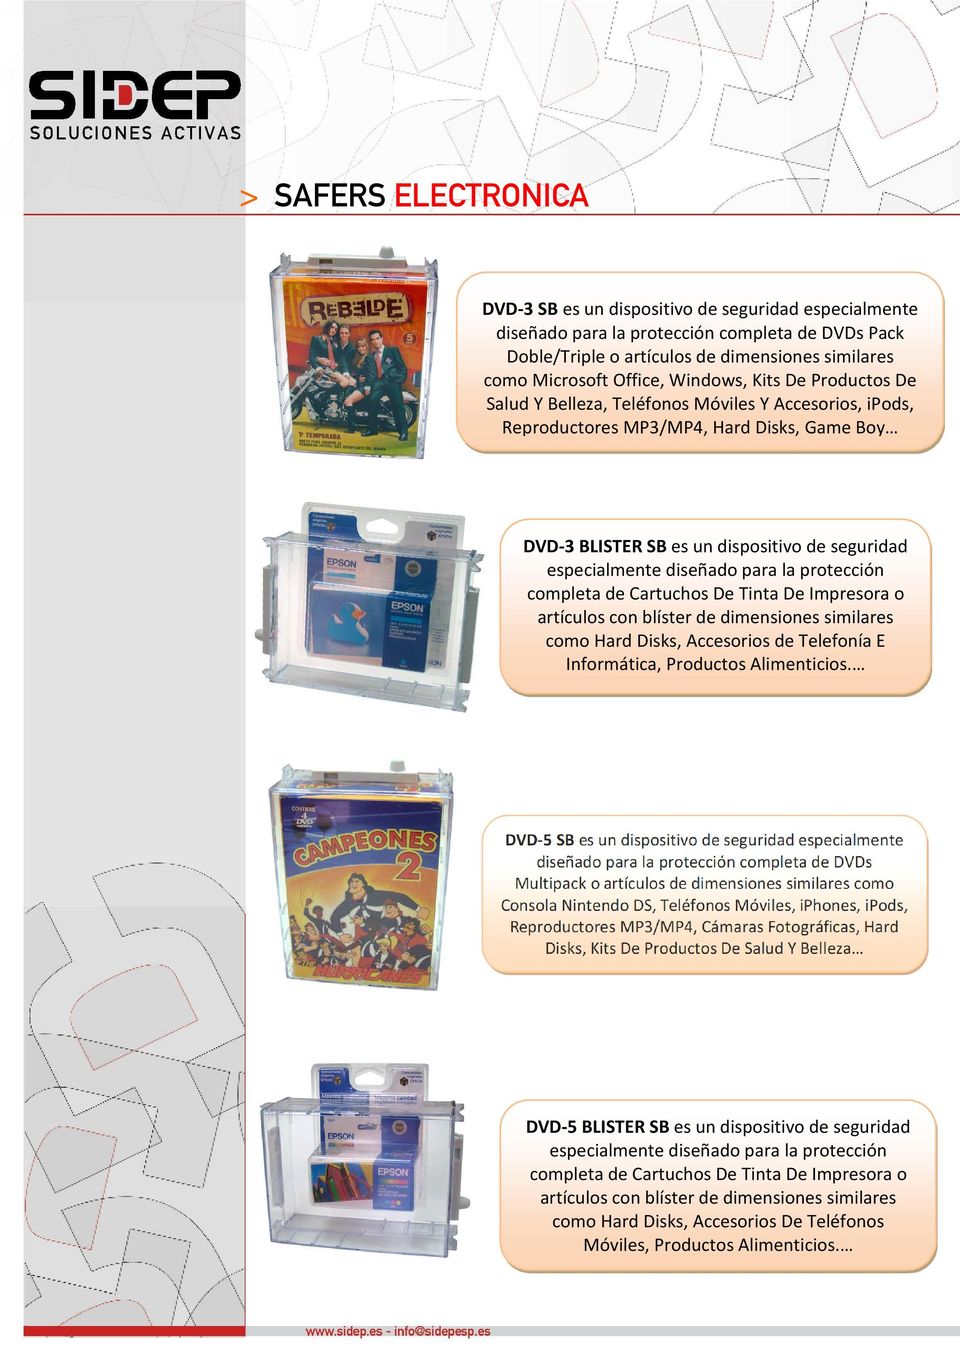 Cartuchos De Tinta De Impresora o artículos con blíster de dimensiones similares como Hard Disks, Accesorios de Telefonía E Informática, Productos Alimenticios.